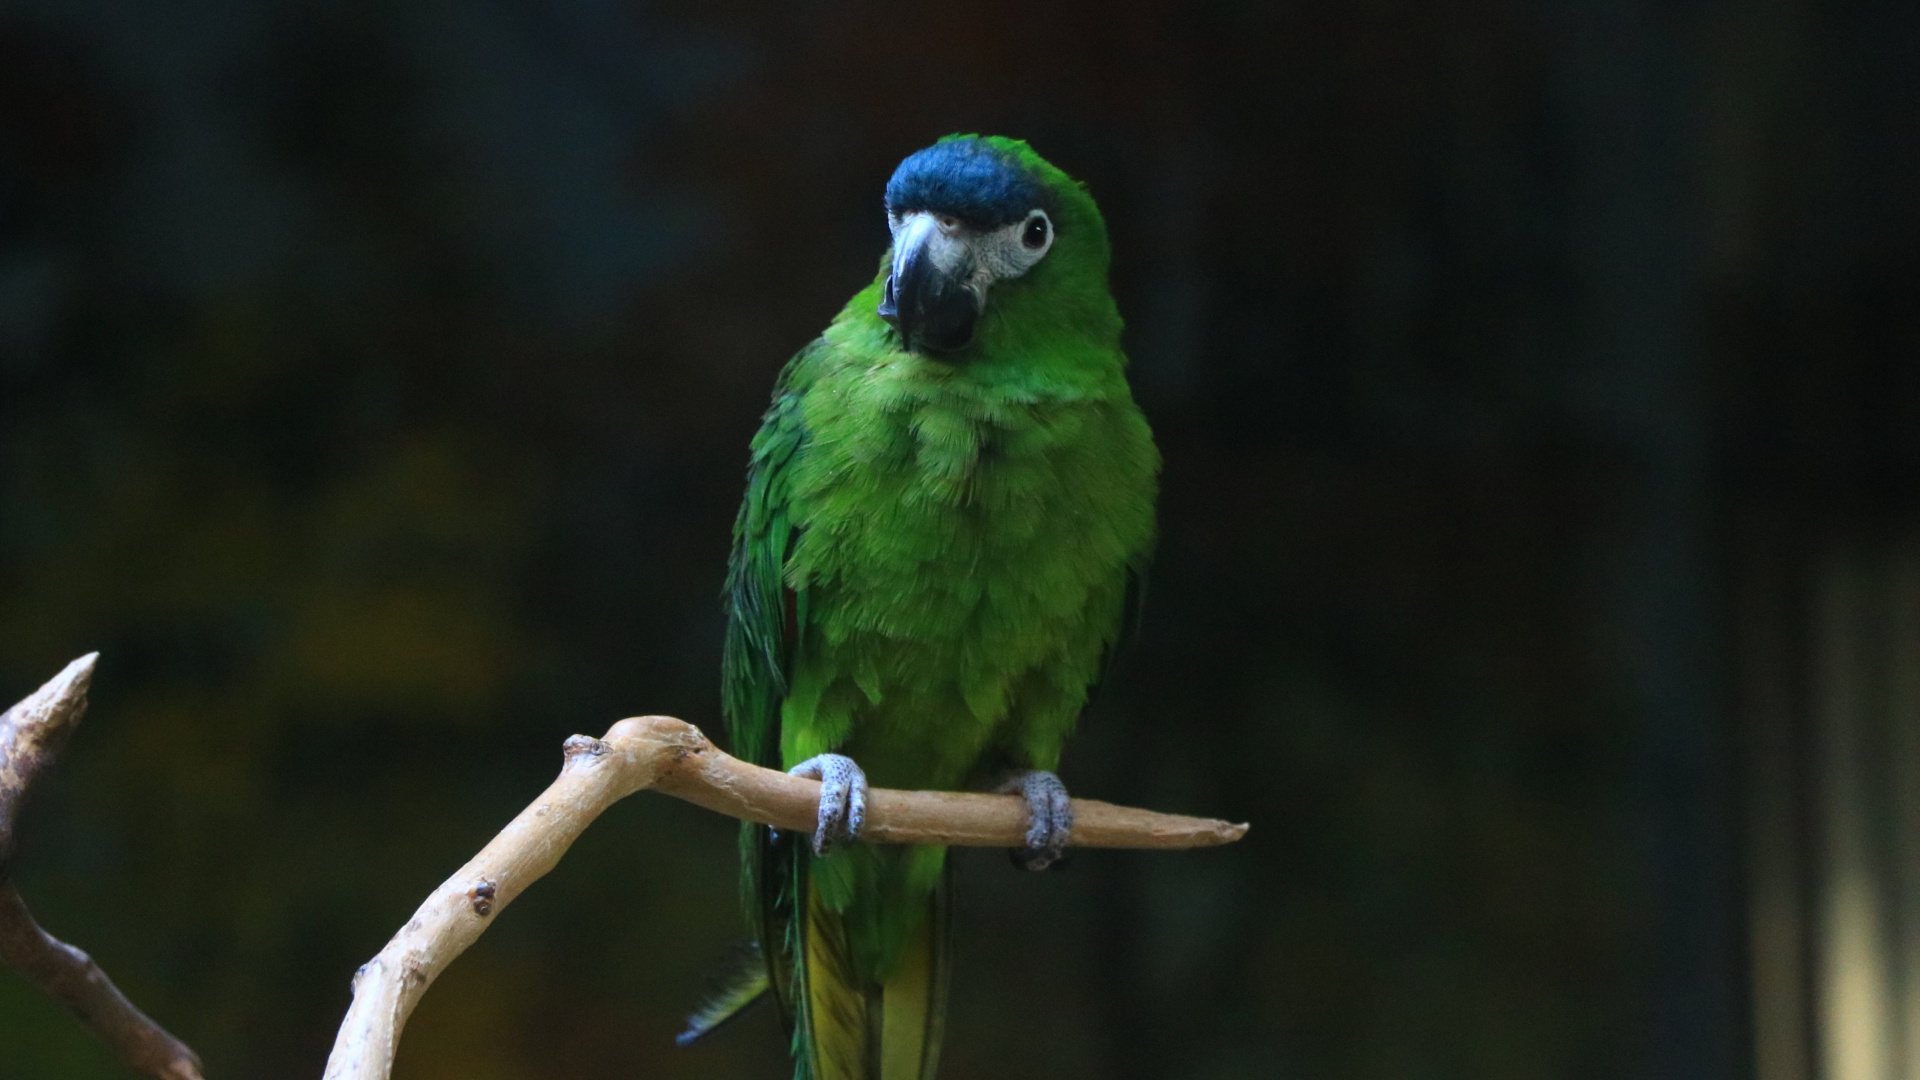 Green Parrot, Birds, Blur, Wallpaper - Green Birds Wallpaper Iphone - HD Wallpaper 